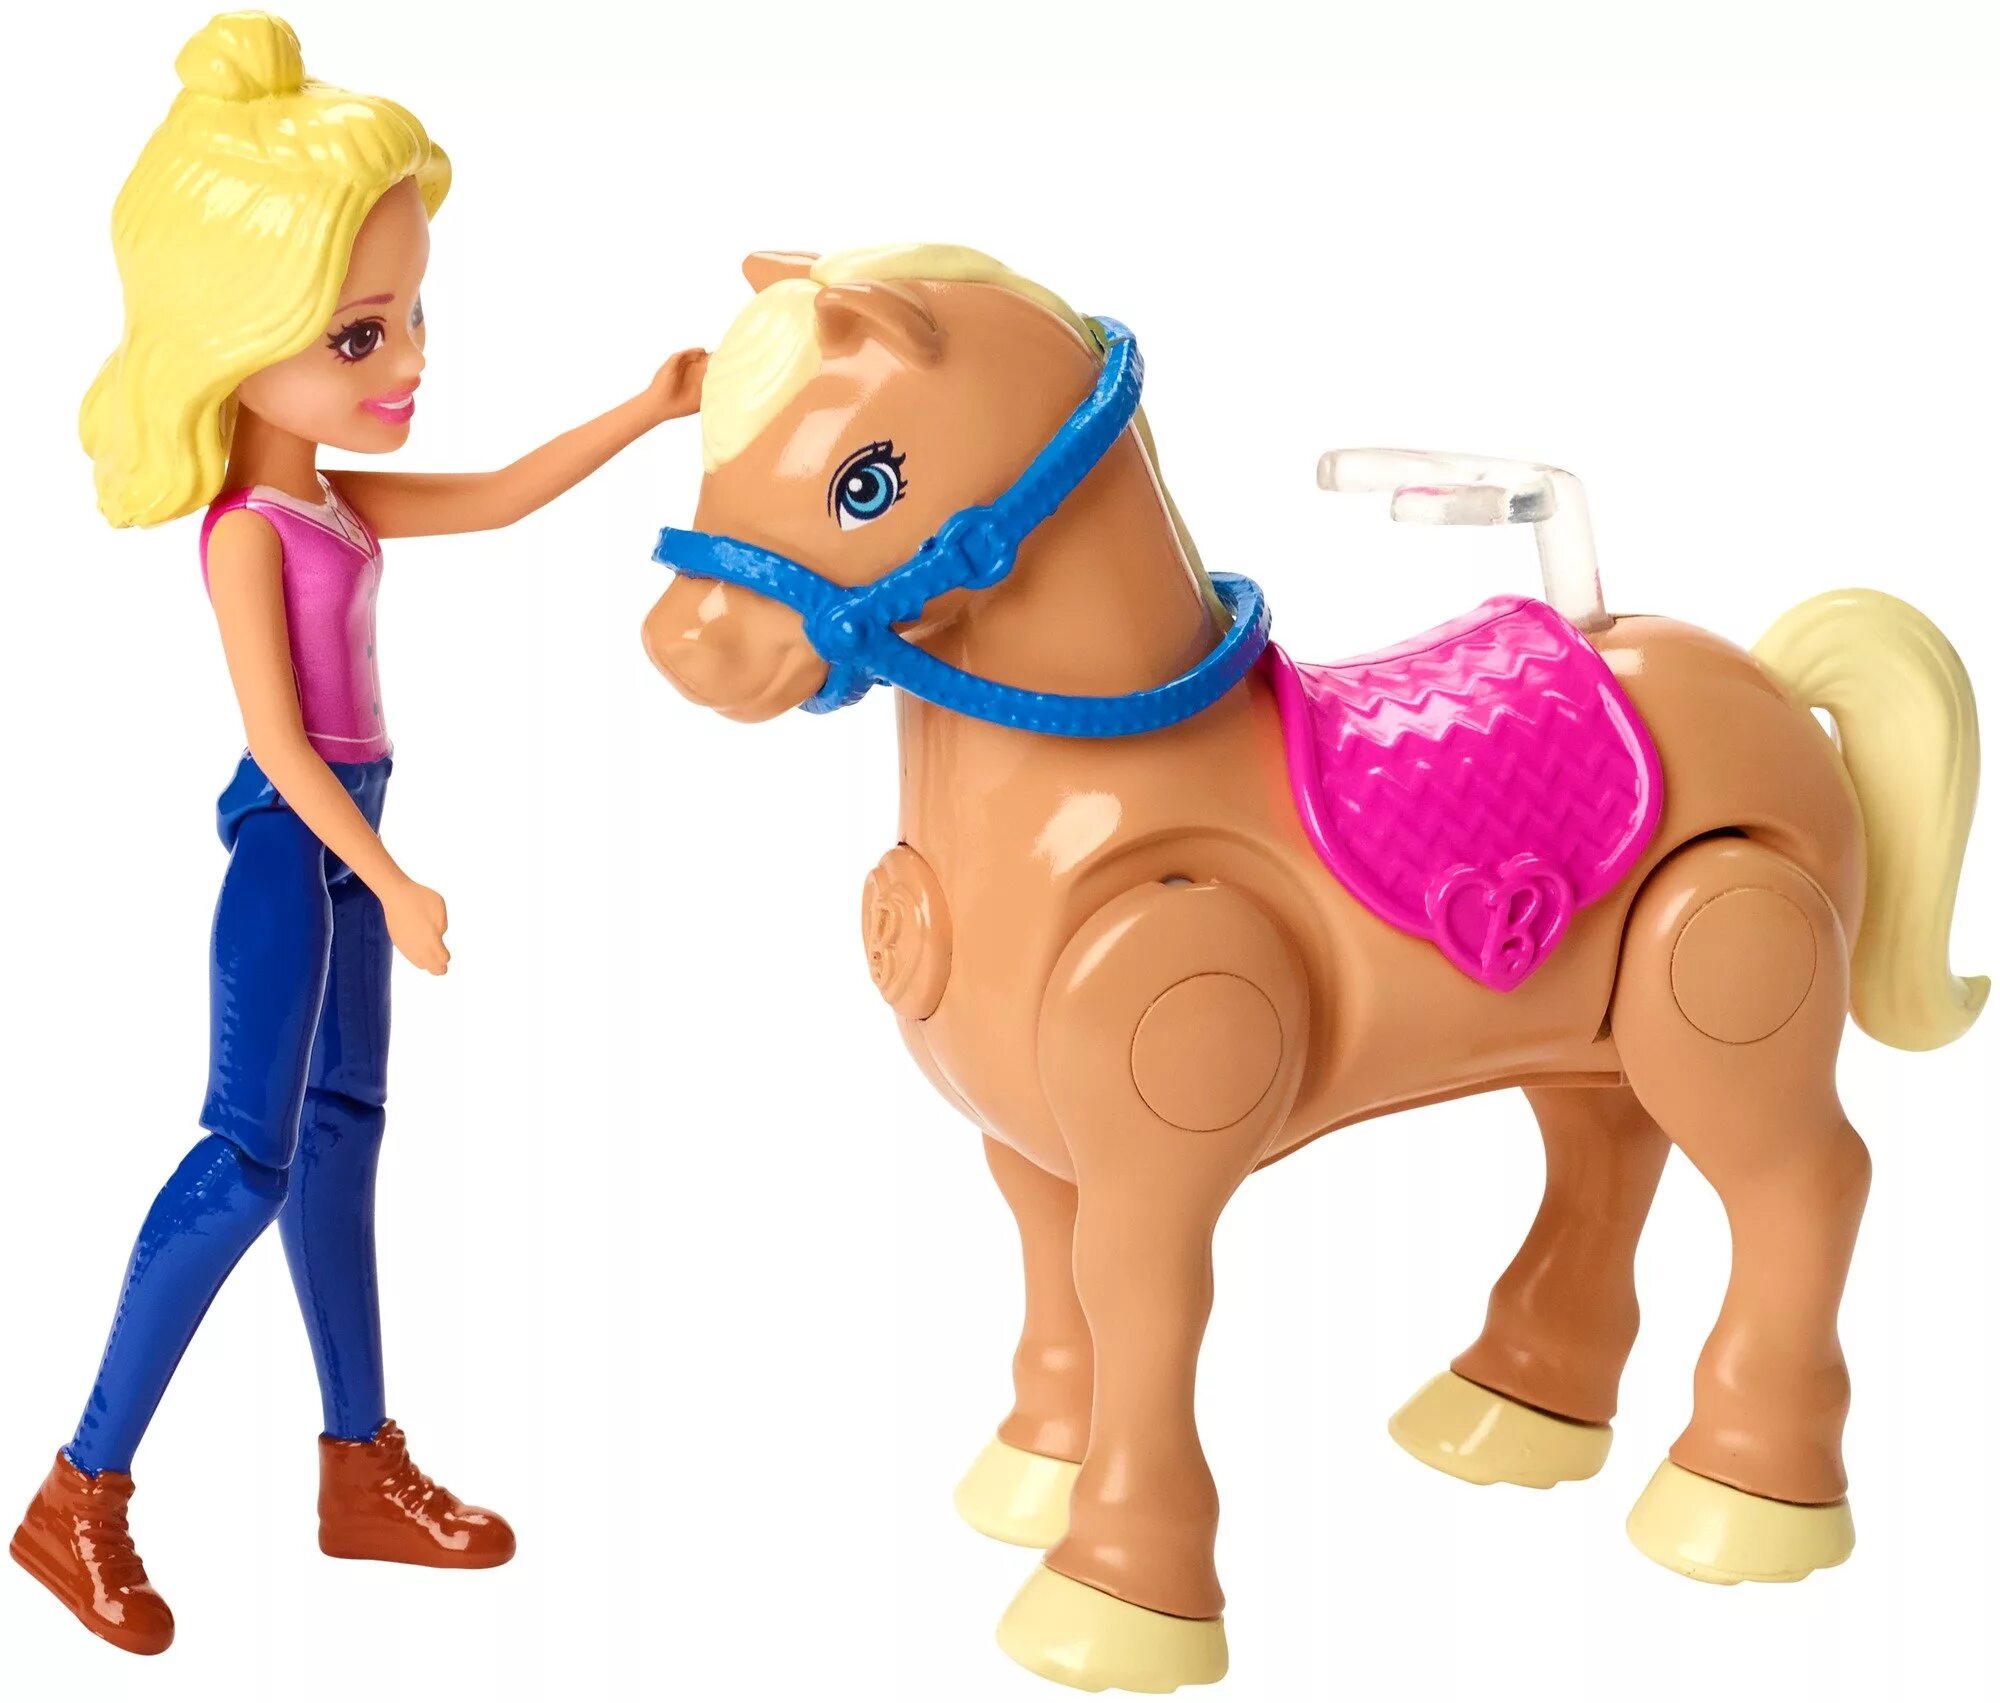 Набор Barbie в движении скачки, 10 см, fhv66. Популярные игрушки для девочек. Barbie в движении игровой набор. Барби с лошадью.